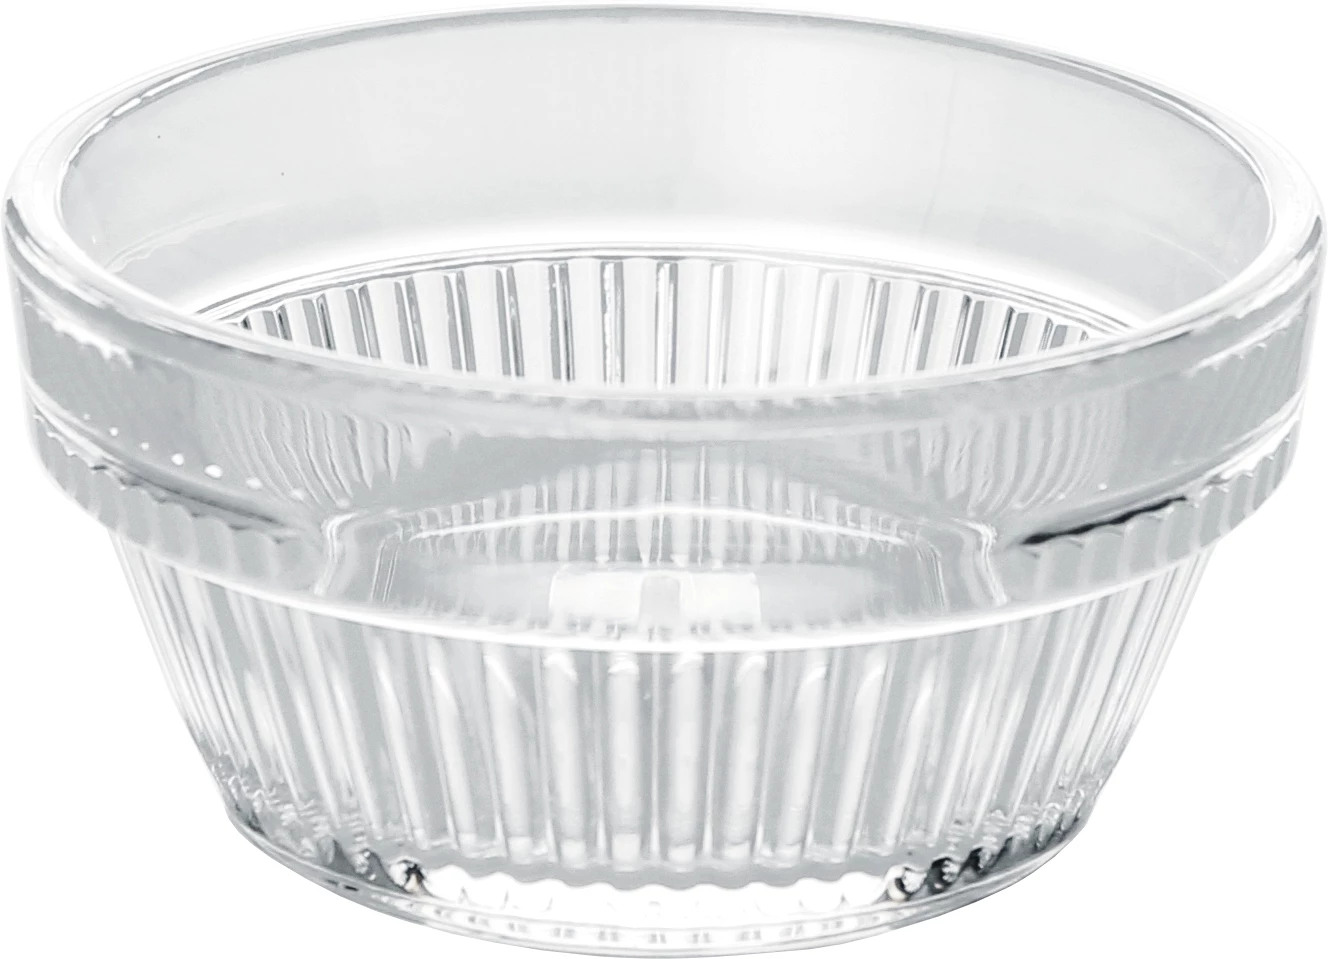 GlassFORever skål, rillet, plast, 7,5 cl, ø7,2 cm